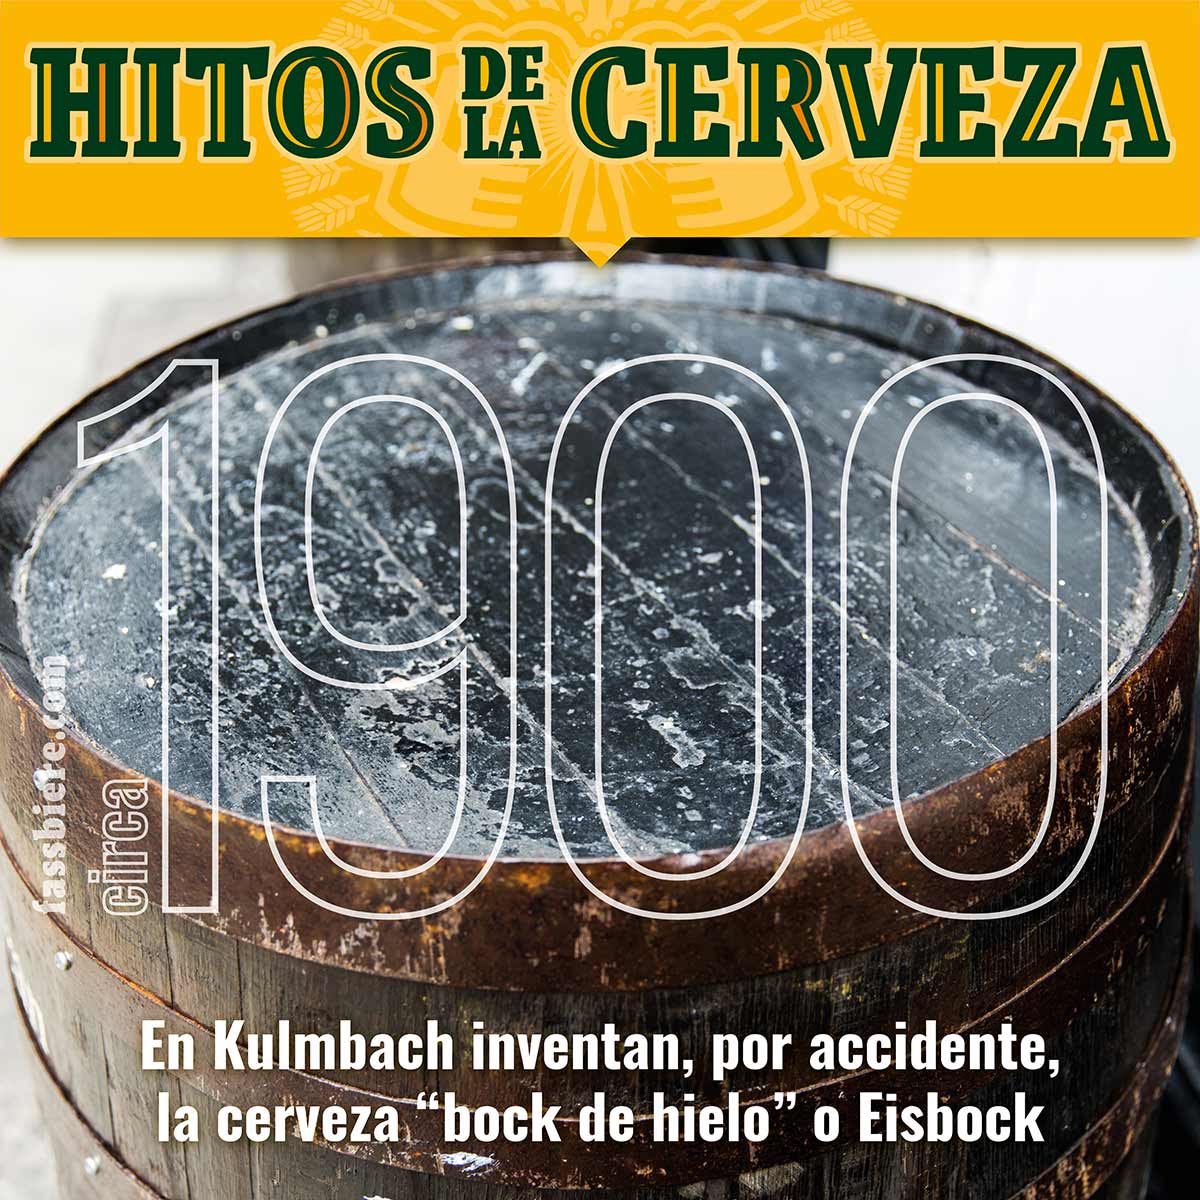 Hitos de la Cerveza en Fassbiere: En 1900 se descubre la cerveza Eisbock, en Kulmbach. Llega un nuevo tipo de cerveza, la “bock de hielo”.